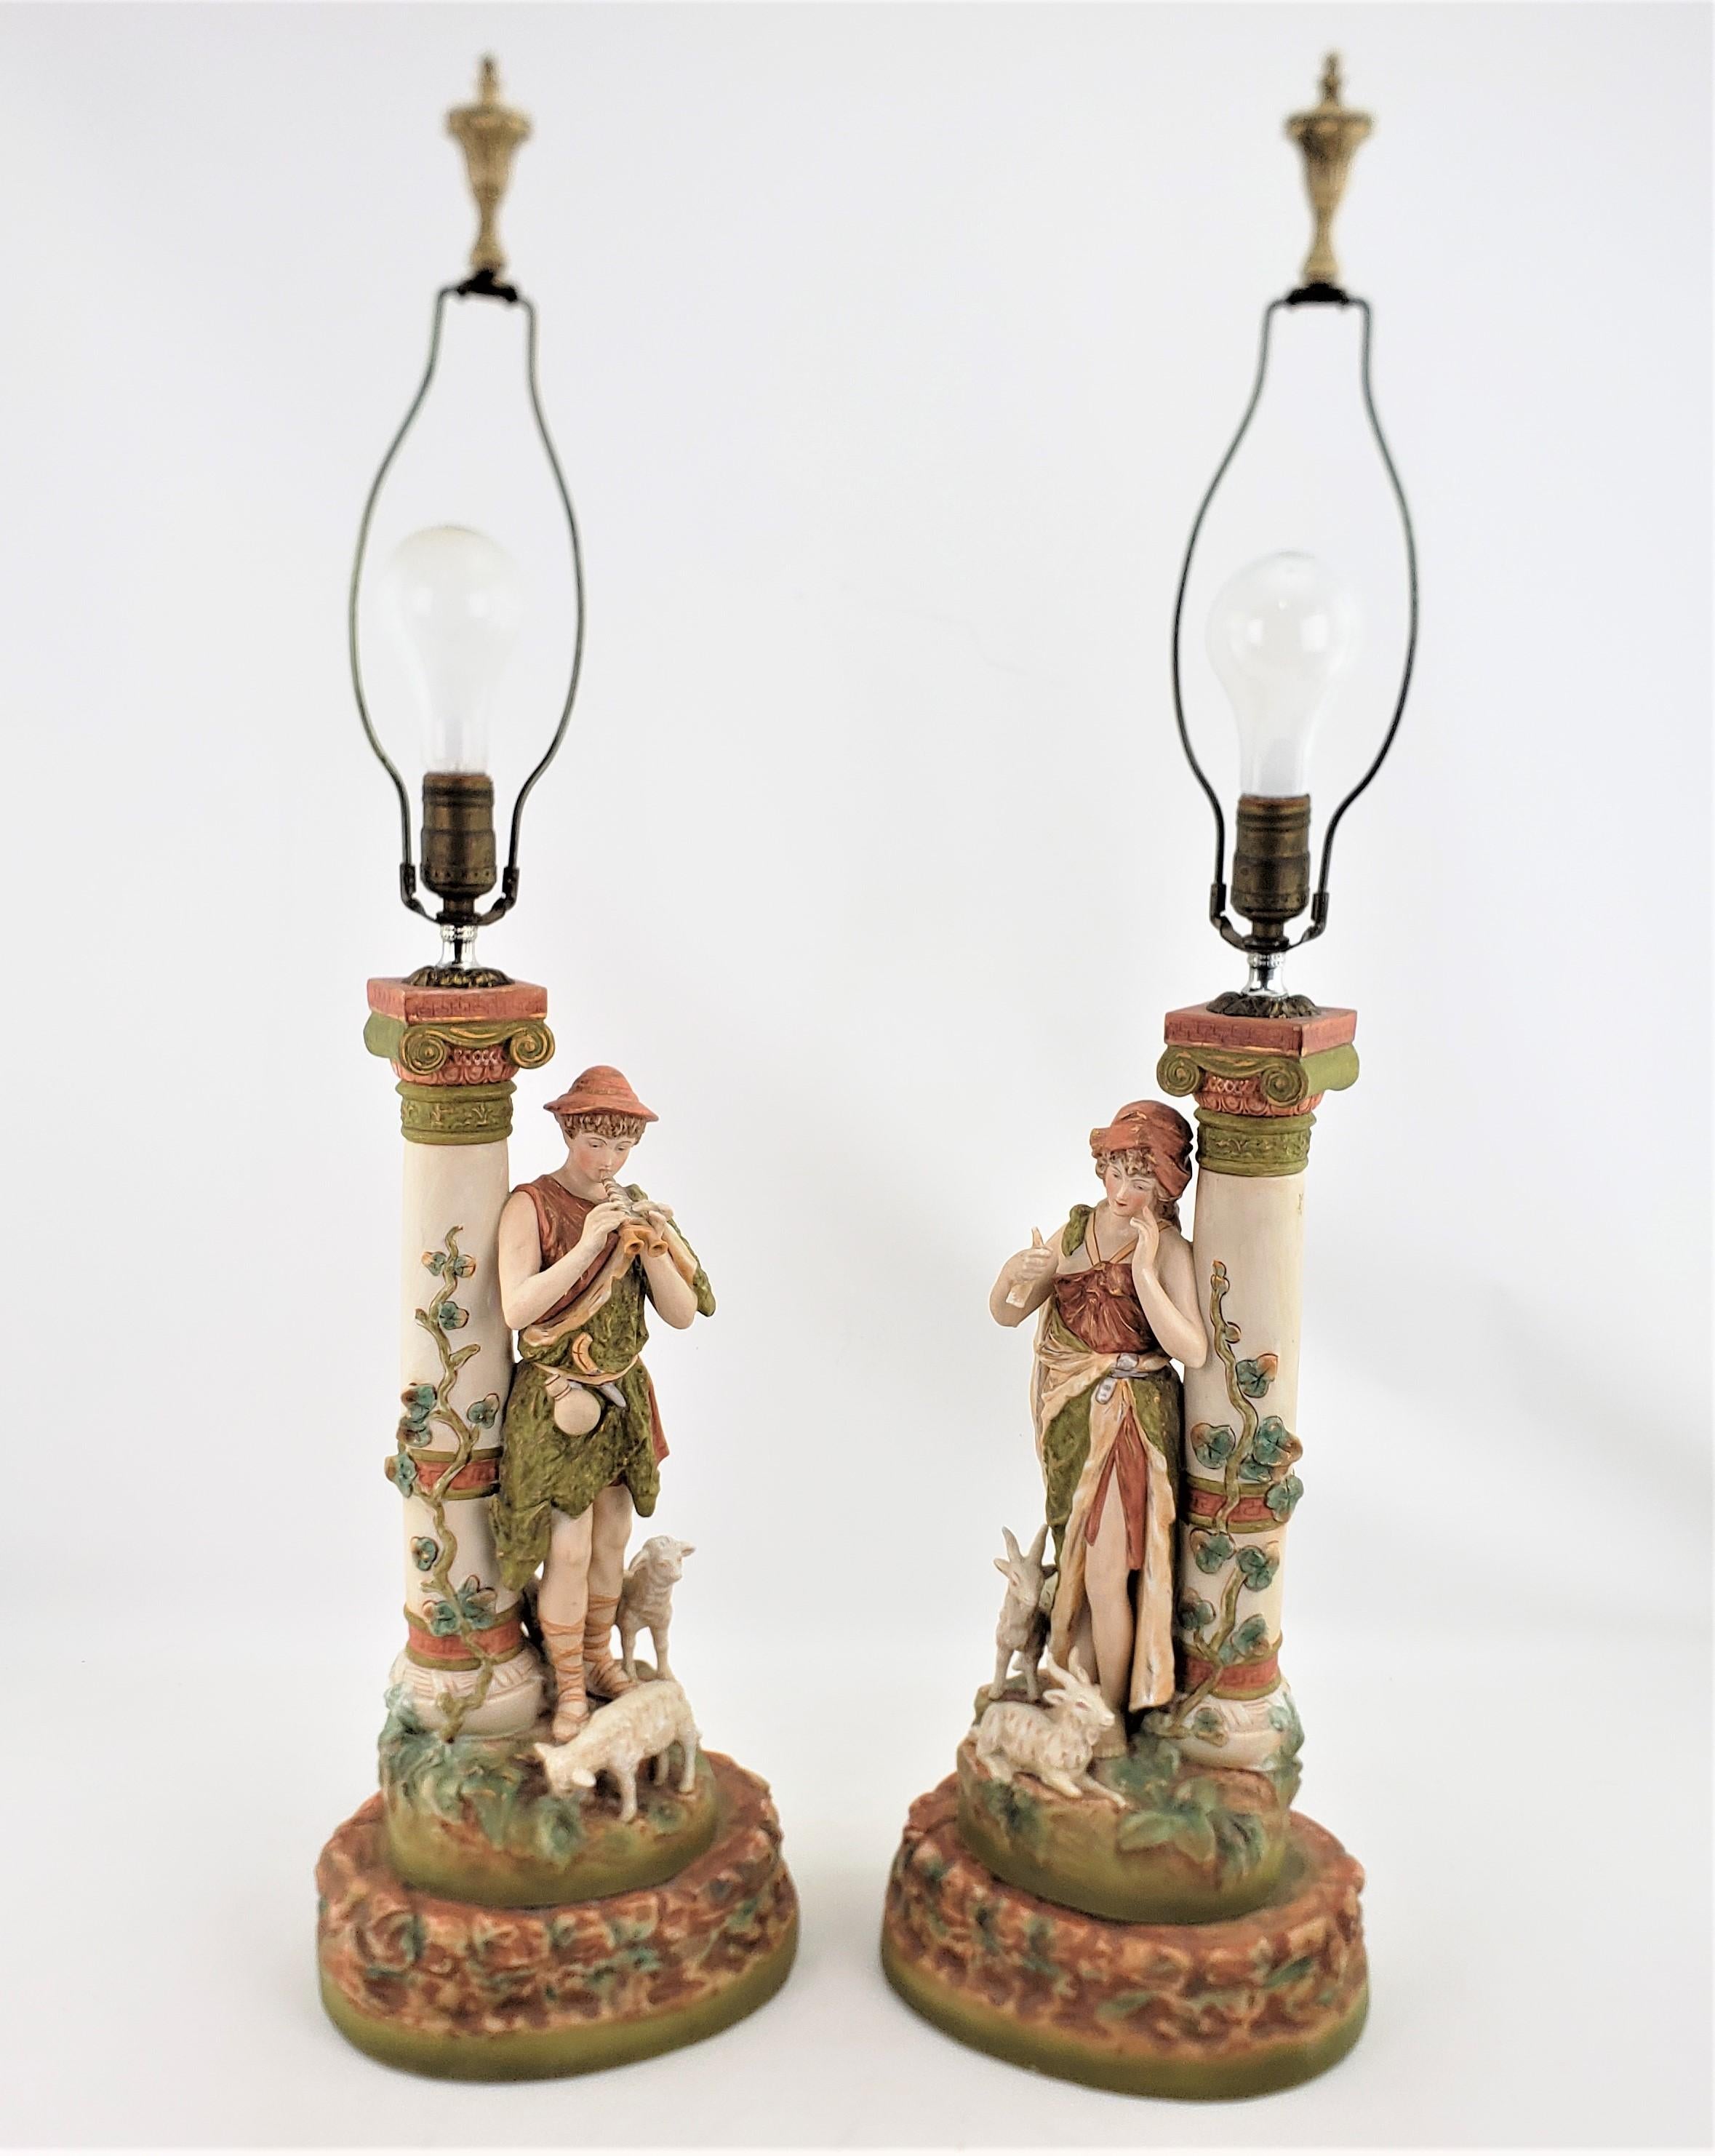 Cette grande paire de lampes anciennes en porcelaine n'est pas signée, mais elle est attribuée à la manufacture Royal Dux de Bohème, aujourd'hui en République tchèque, dans un style néoclassique. La modélisation détaillée et la peinture à la main